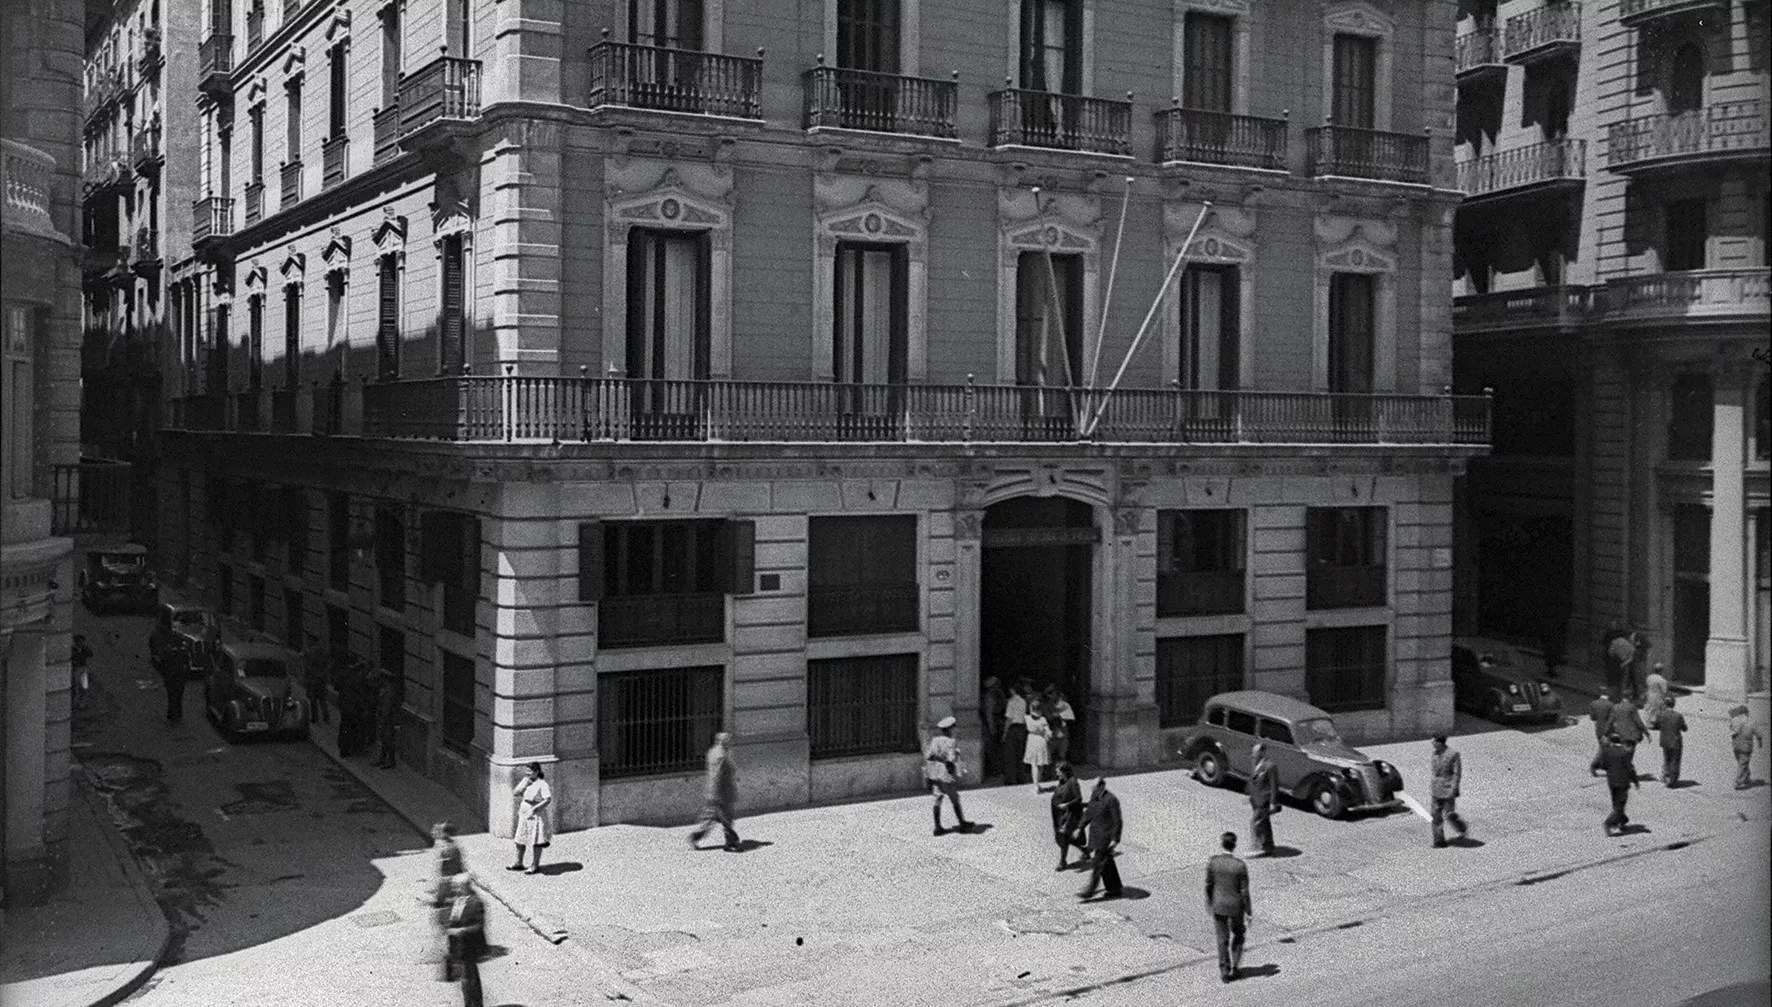 Després de la guerra, els franquistes van convertir aquest edifici de la Via Laietana en la seu de la Brigada Político-Social, on era habitual la tortura